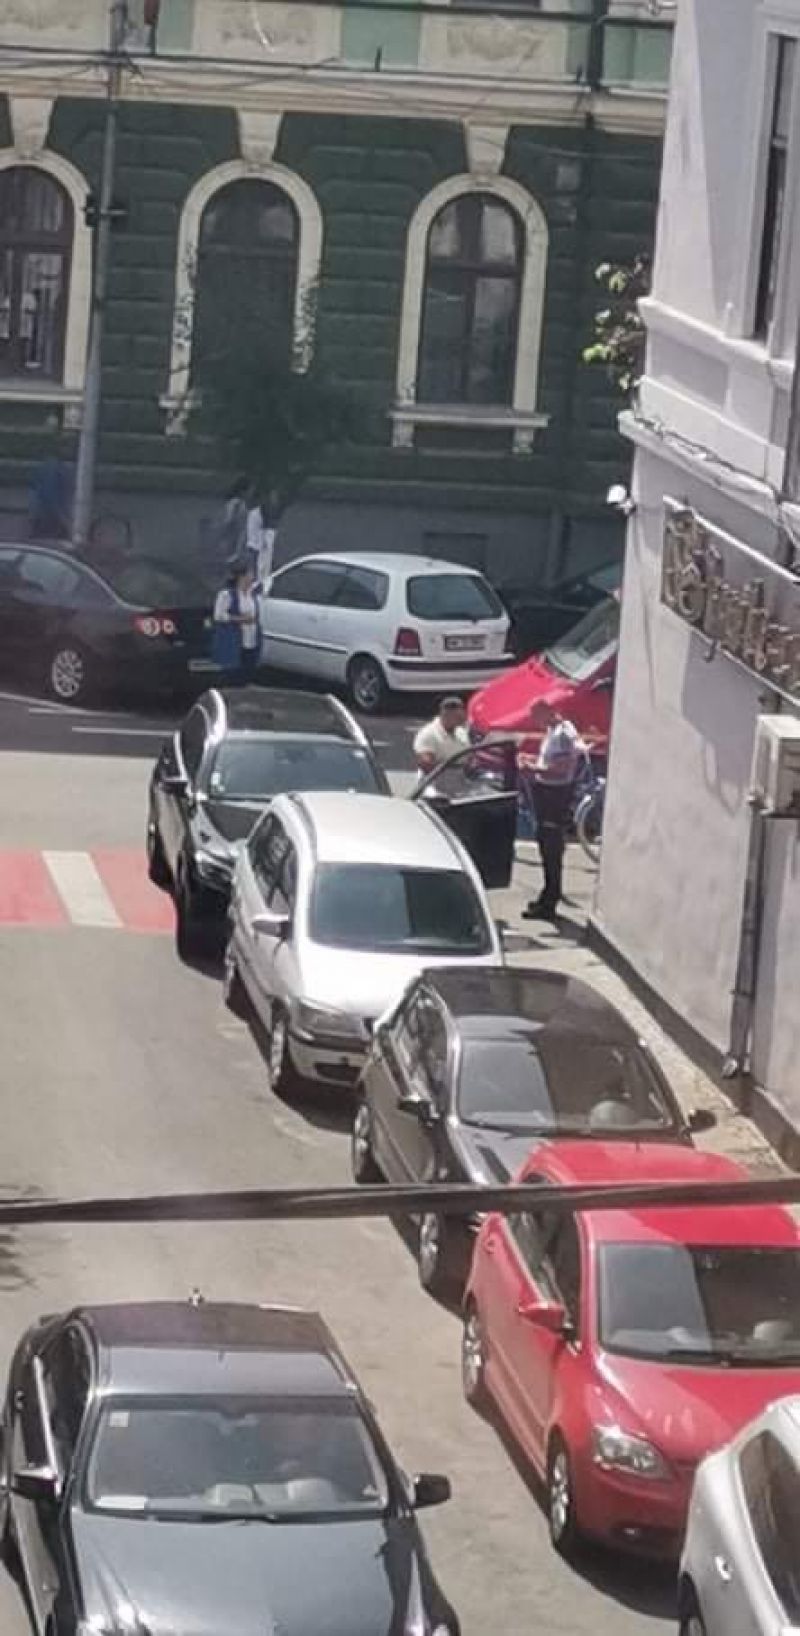 ÎN VESTUL EUROPEI MIELUȘEI, ACASĂ ZMEI - Un „străinez” român, nesimțit cât încape, a parcat pe o trecere pentru pietoni din Sighet, blocând-o complet